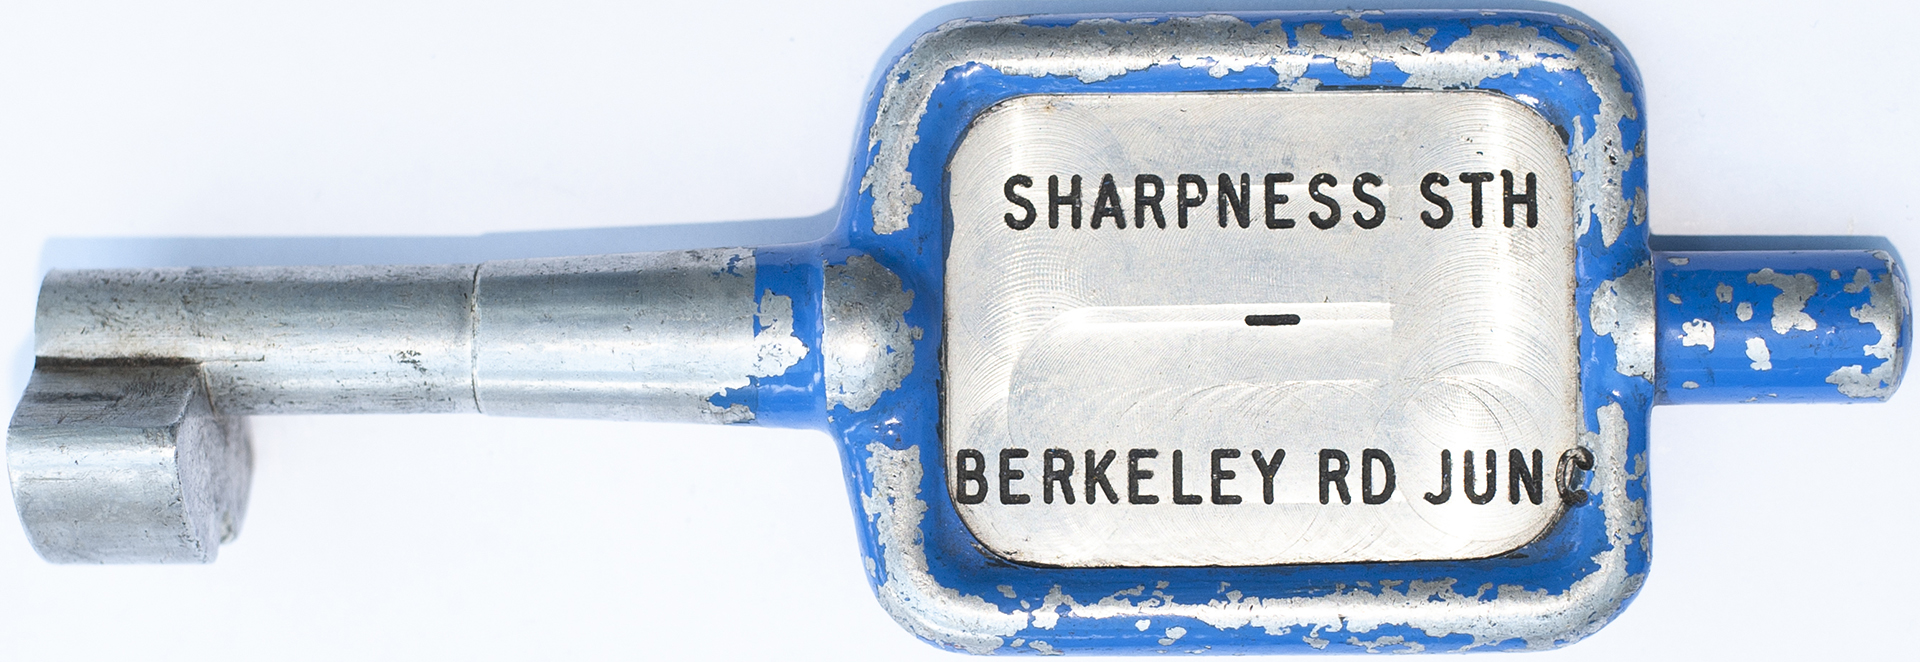 Sharpness Sth - Berkeley Rd Junc